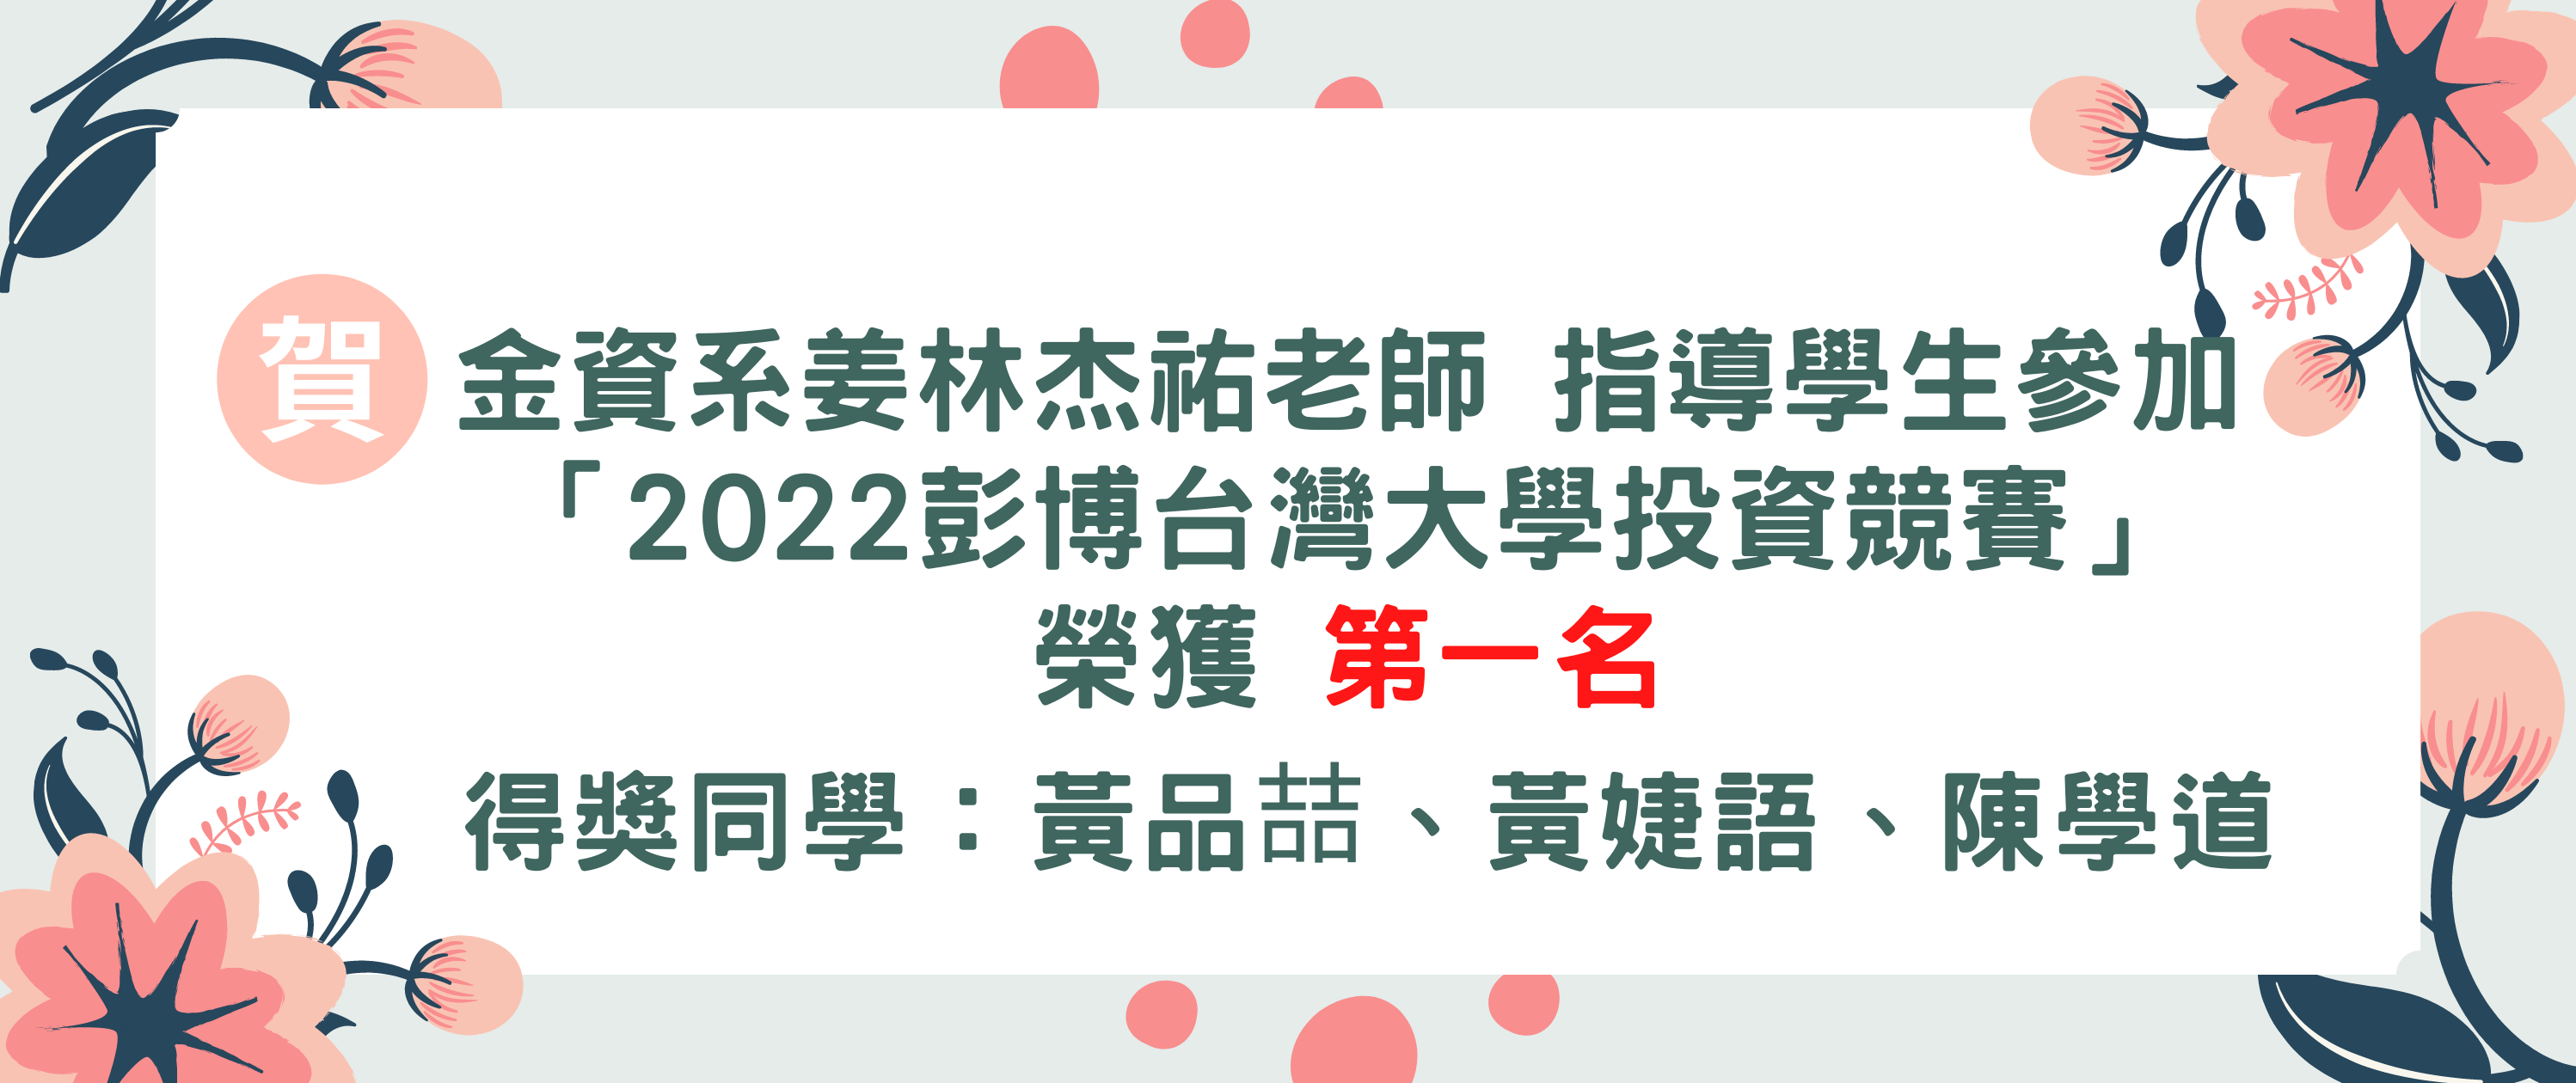 2022彭博台灣大學投資競賽